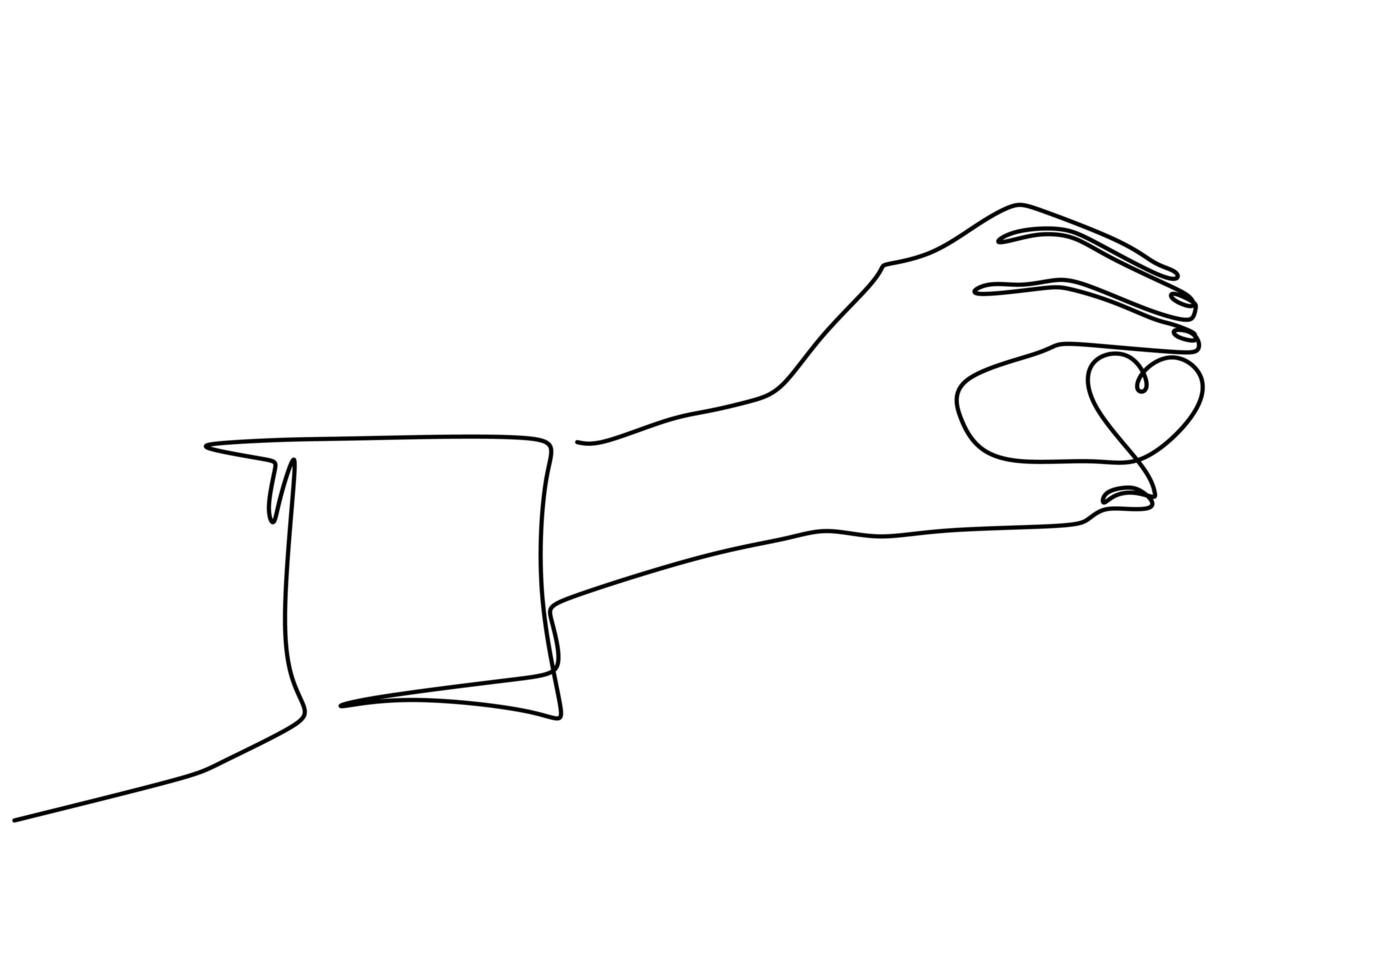 dibujo de línea continua mano sosteniendo un pedazo de corazón, una ilustración de vector de boceto dibujado a mano.